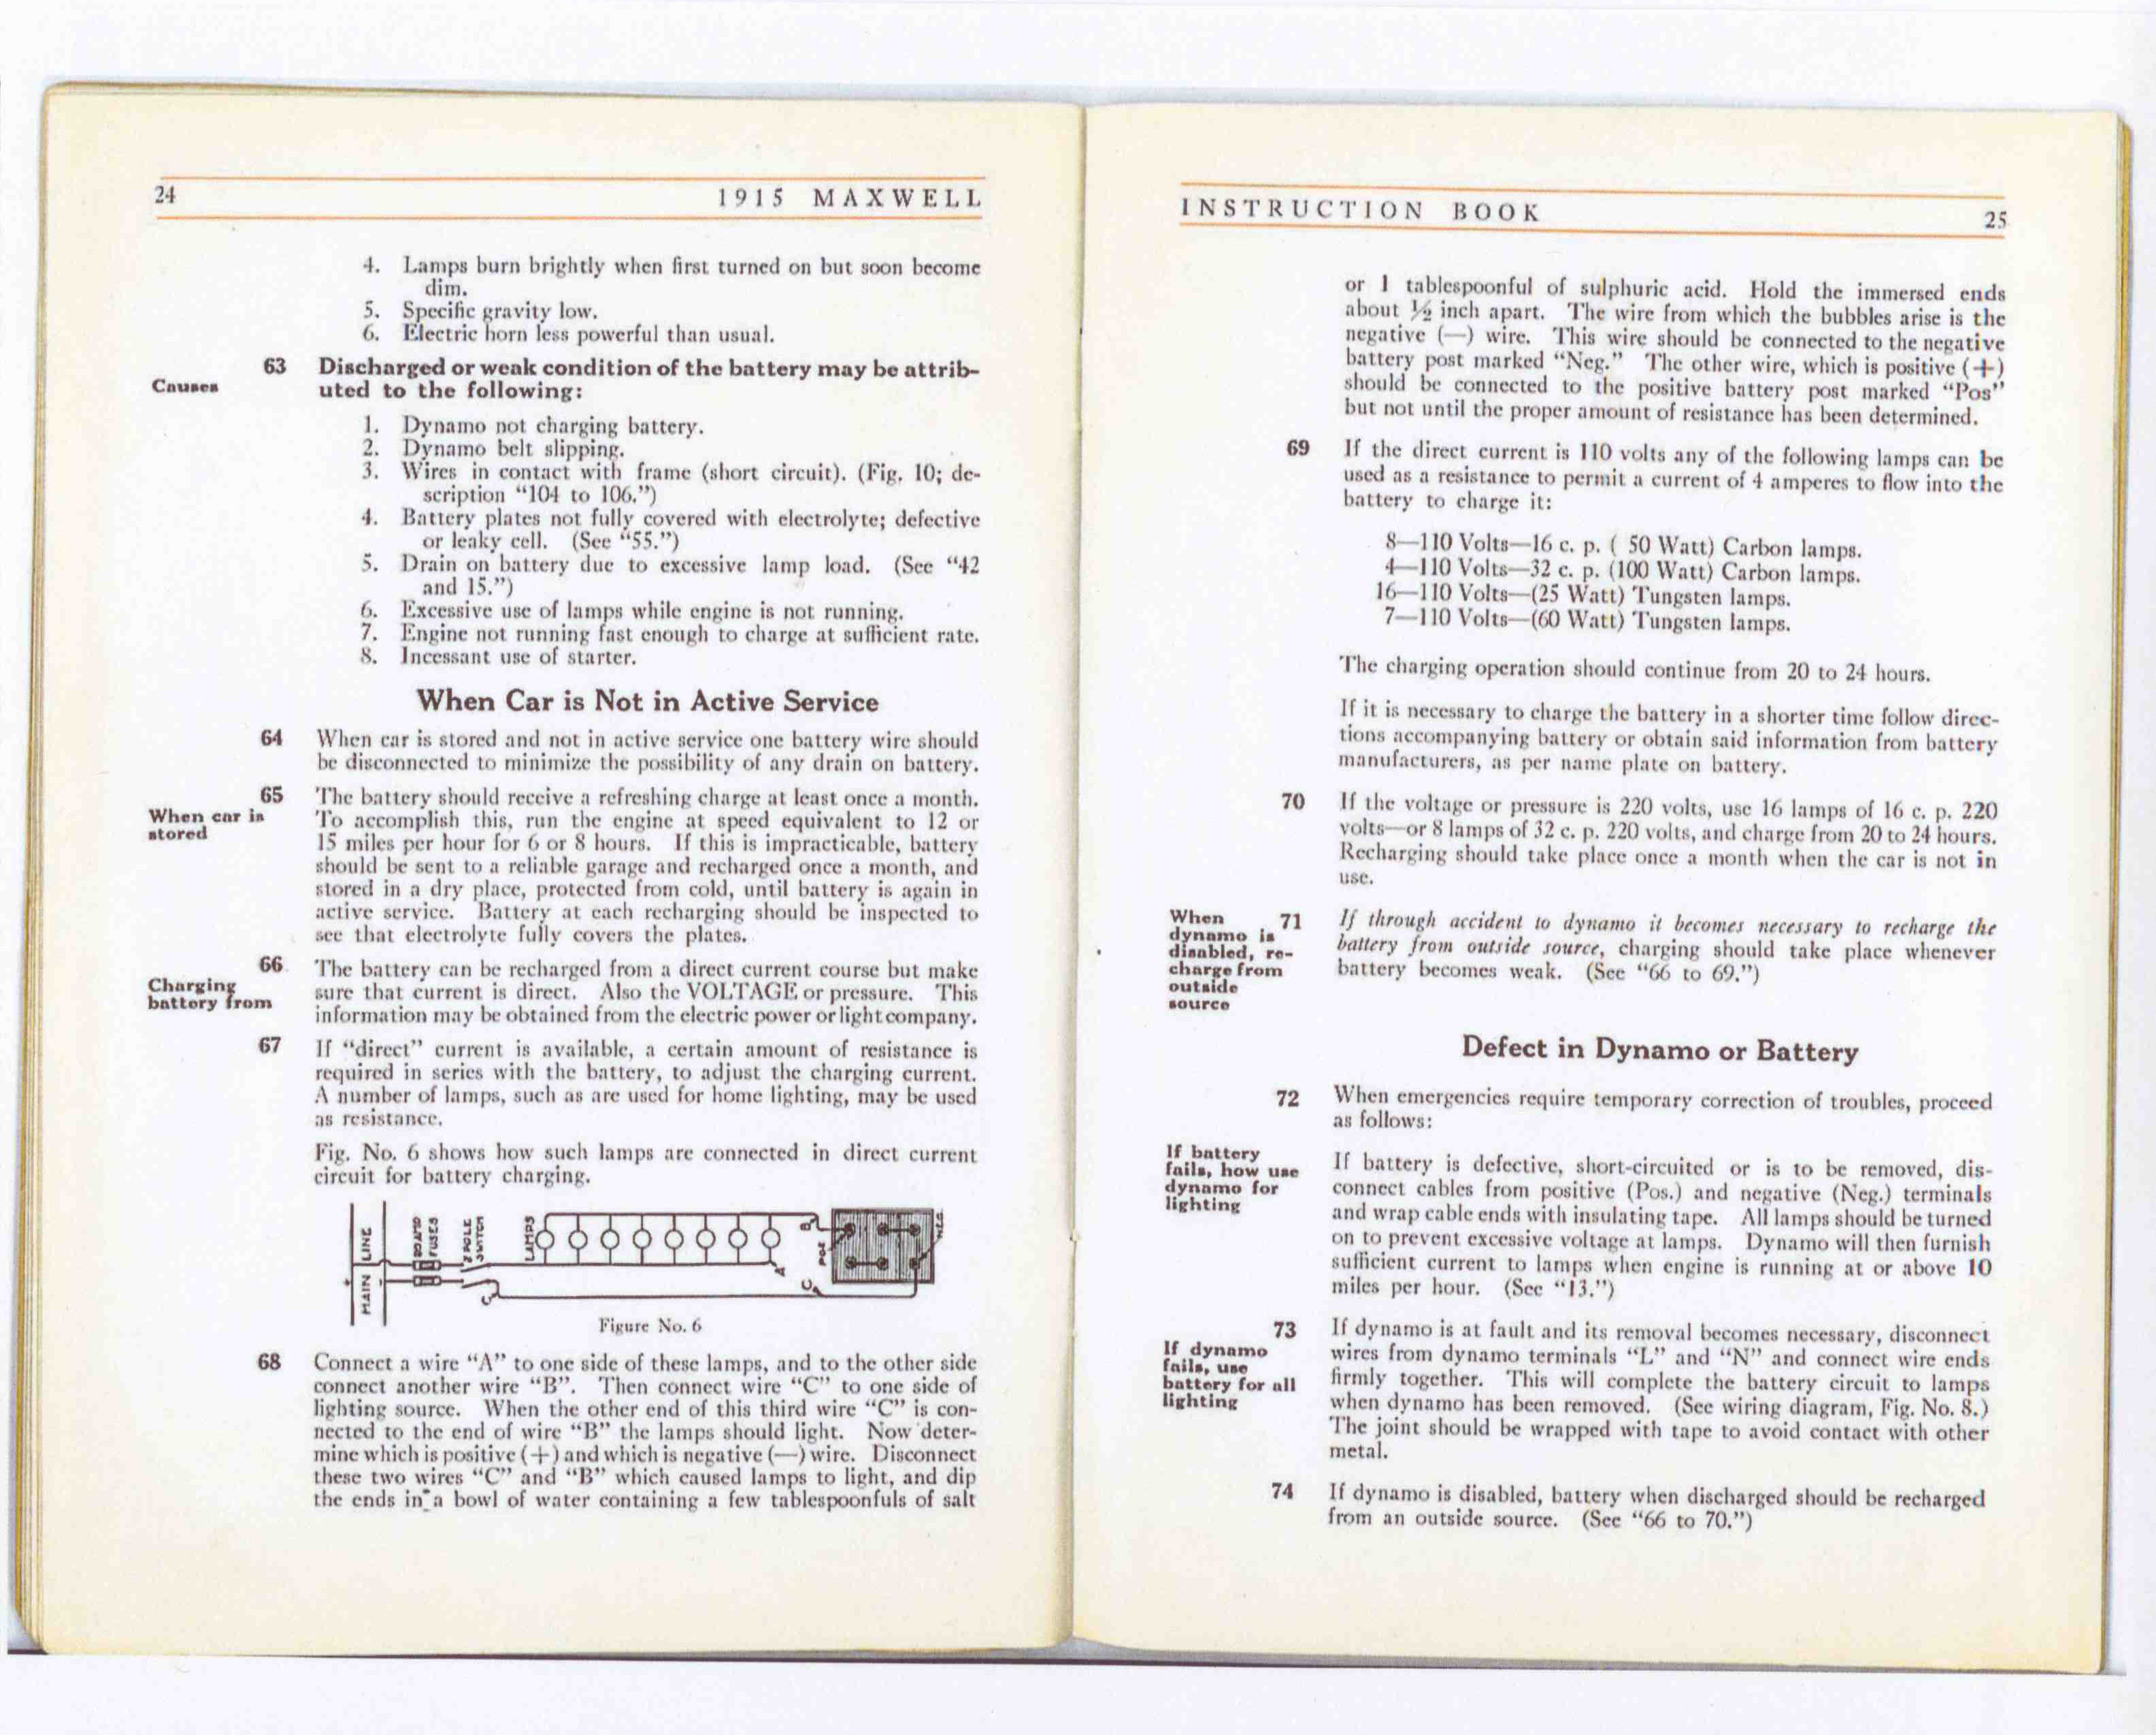 1915 Maxwell InstructionBook-14